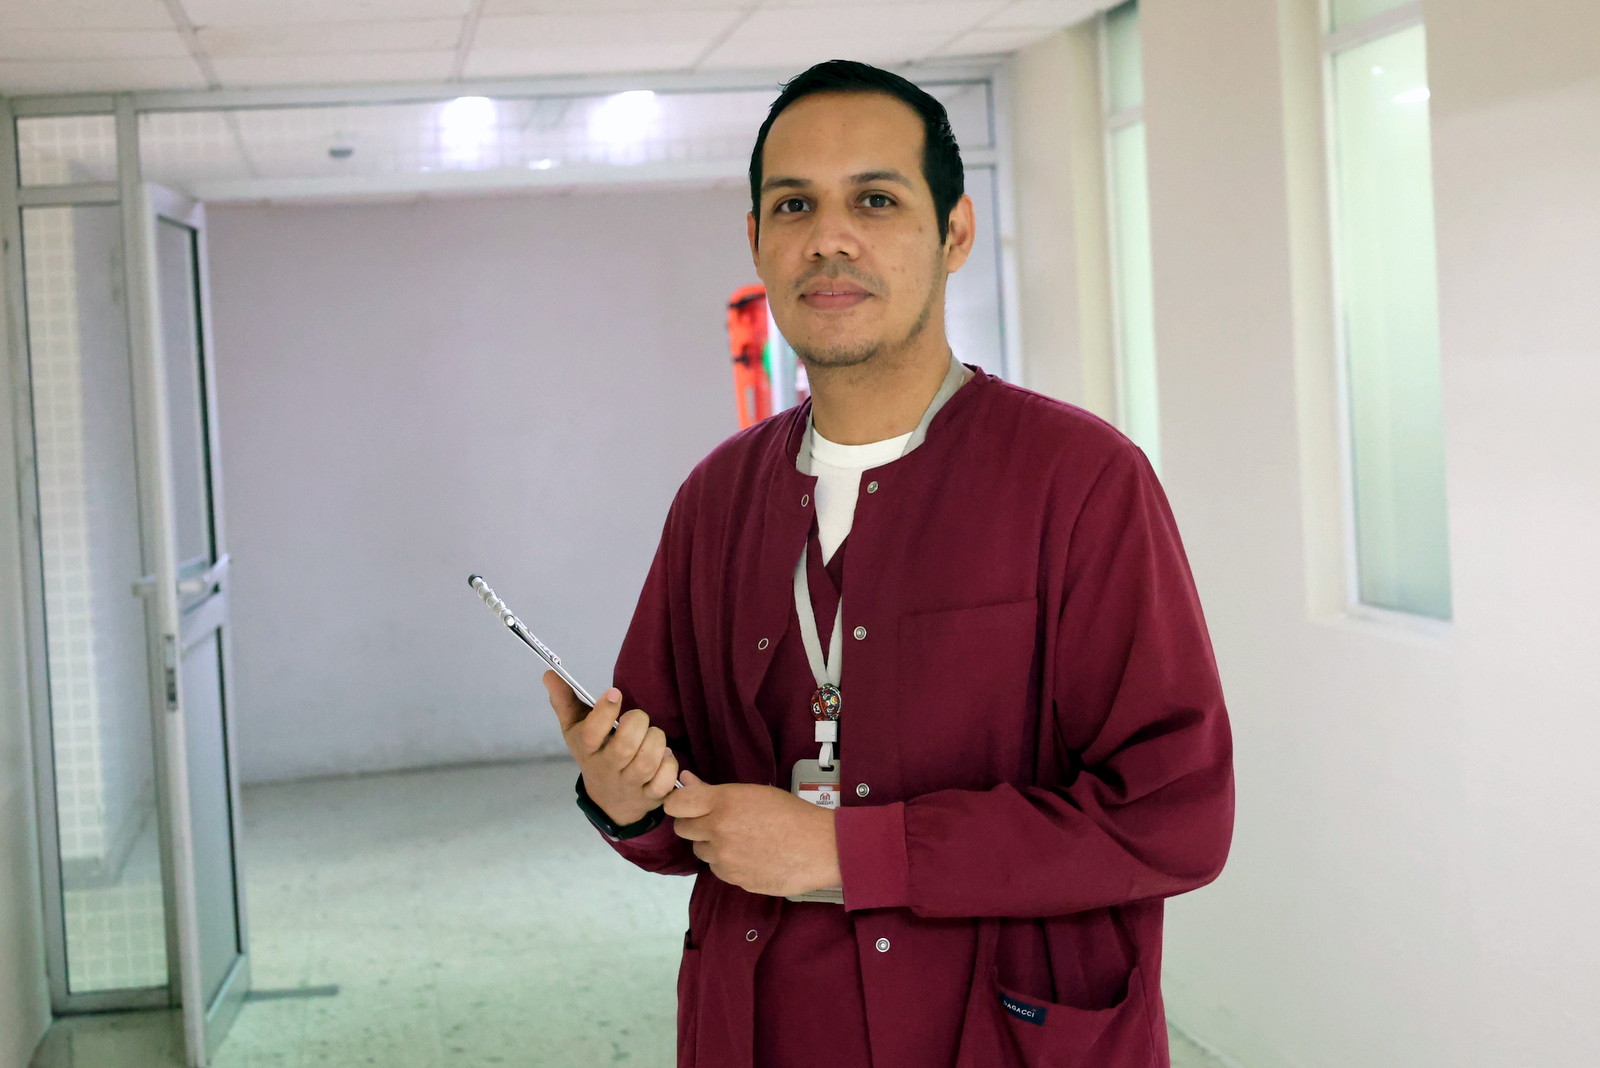 Satisfacción y amor al servicio ha encontrado en la enfermería Leonardo Uriel